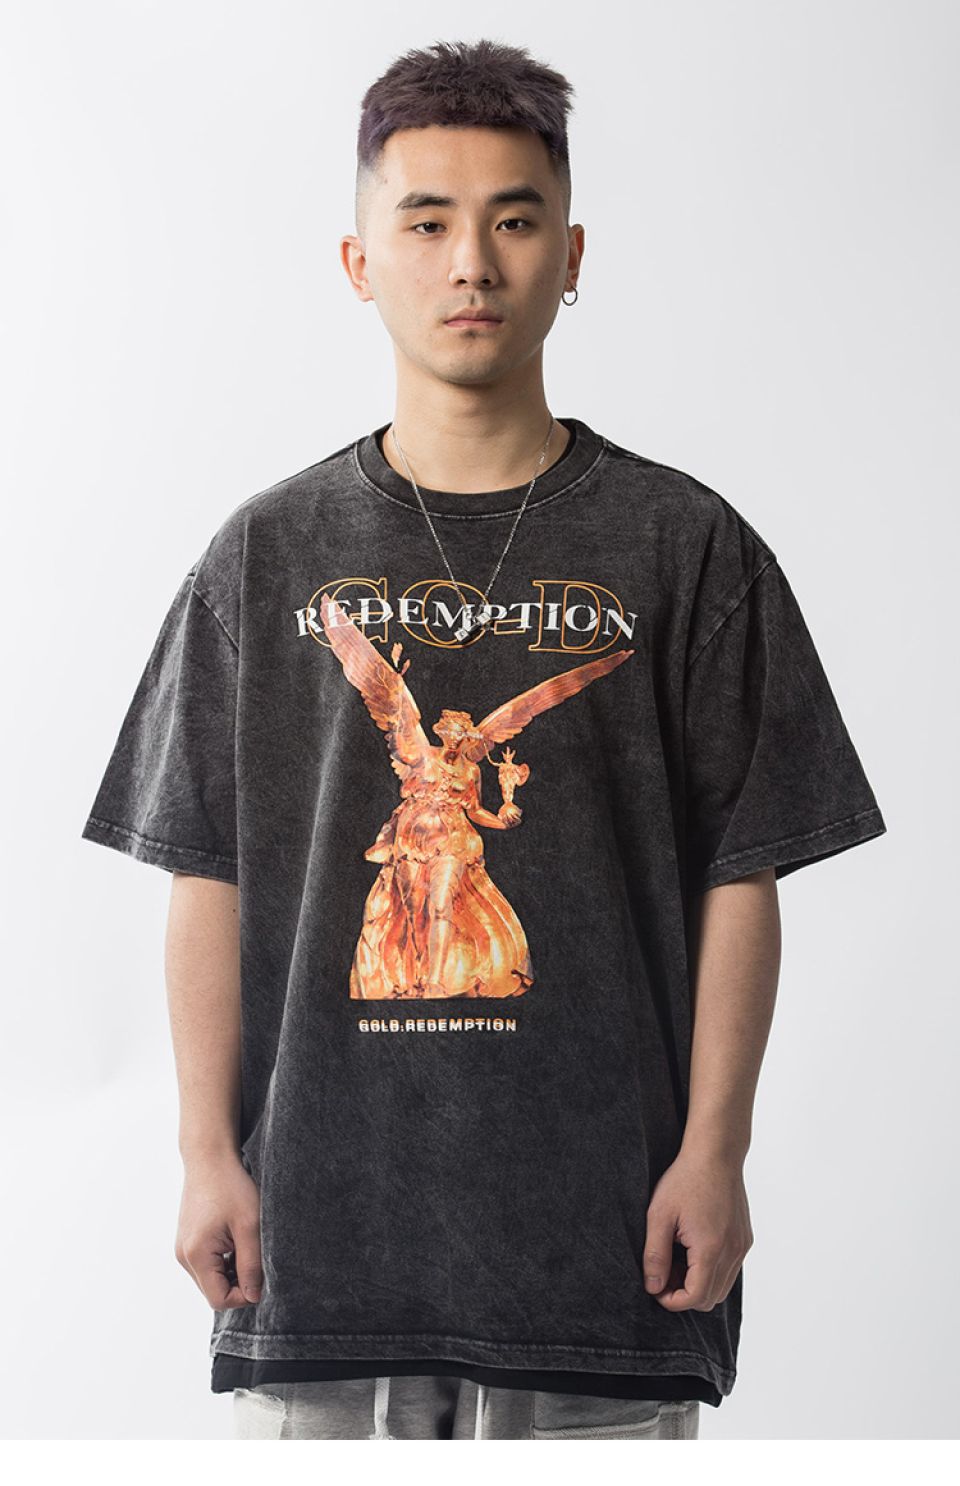 Redemption Cotton T-shirt